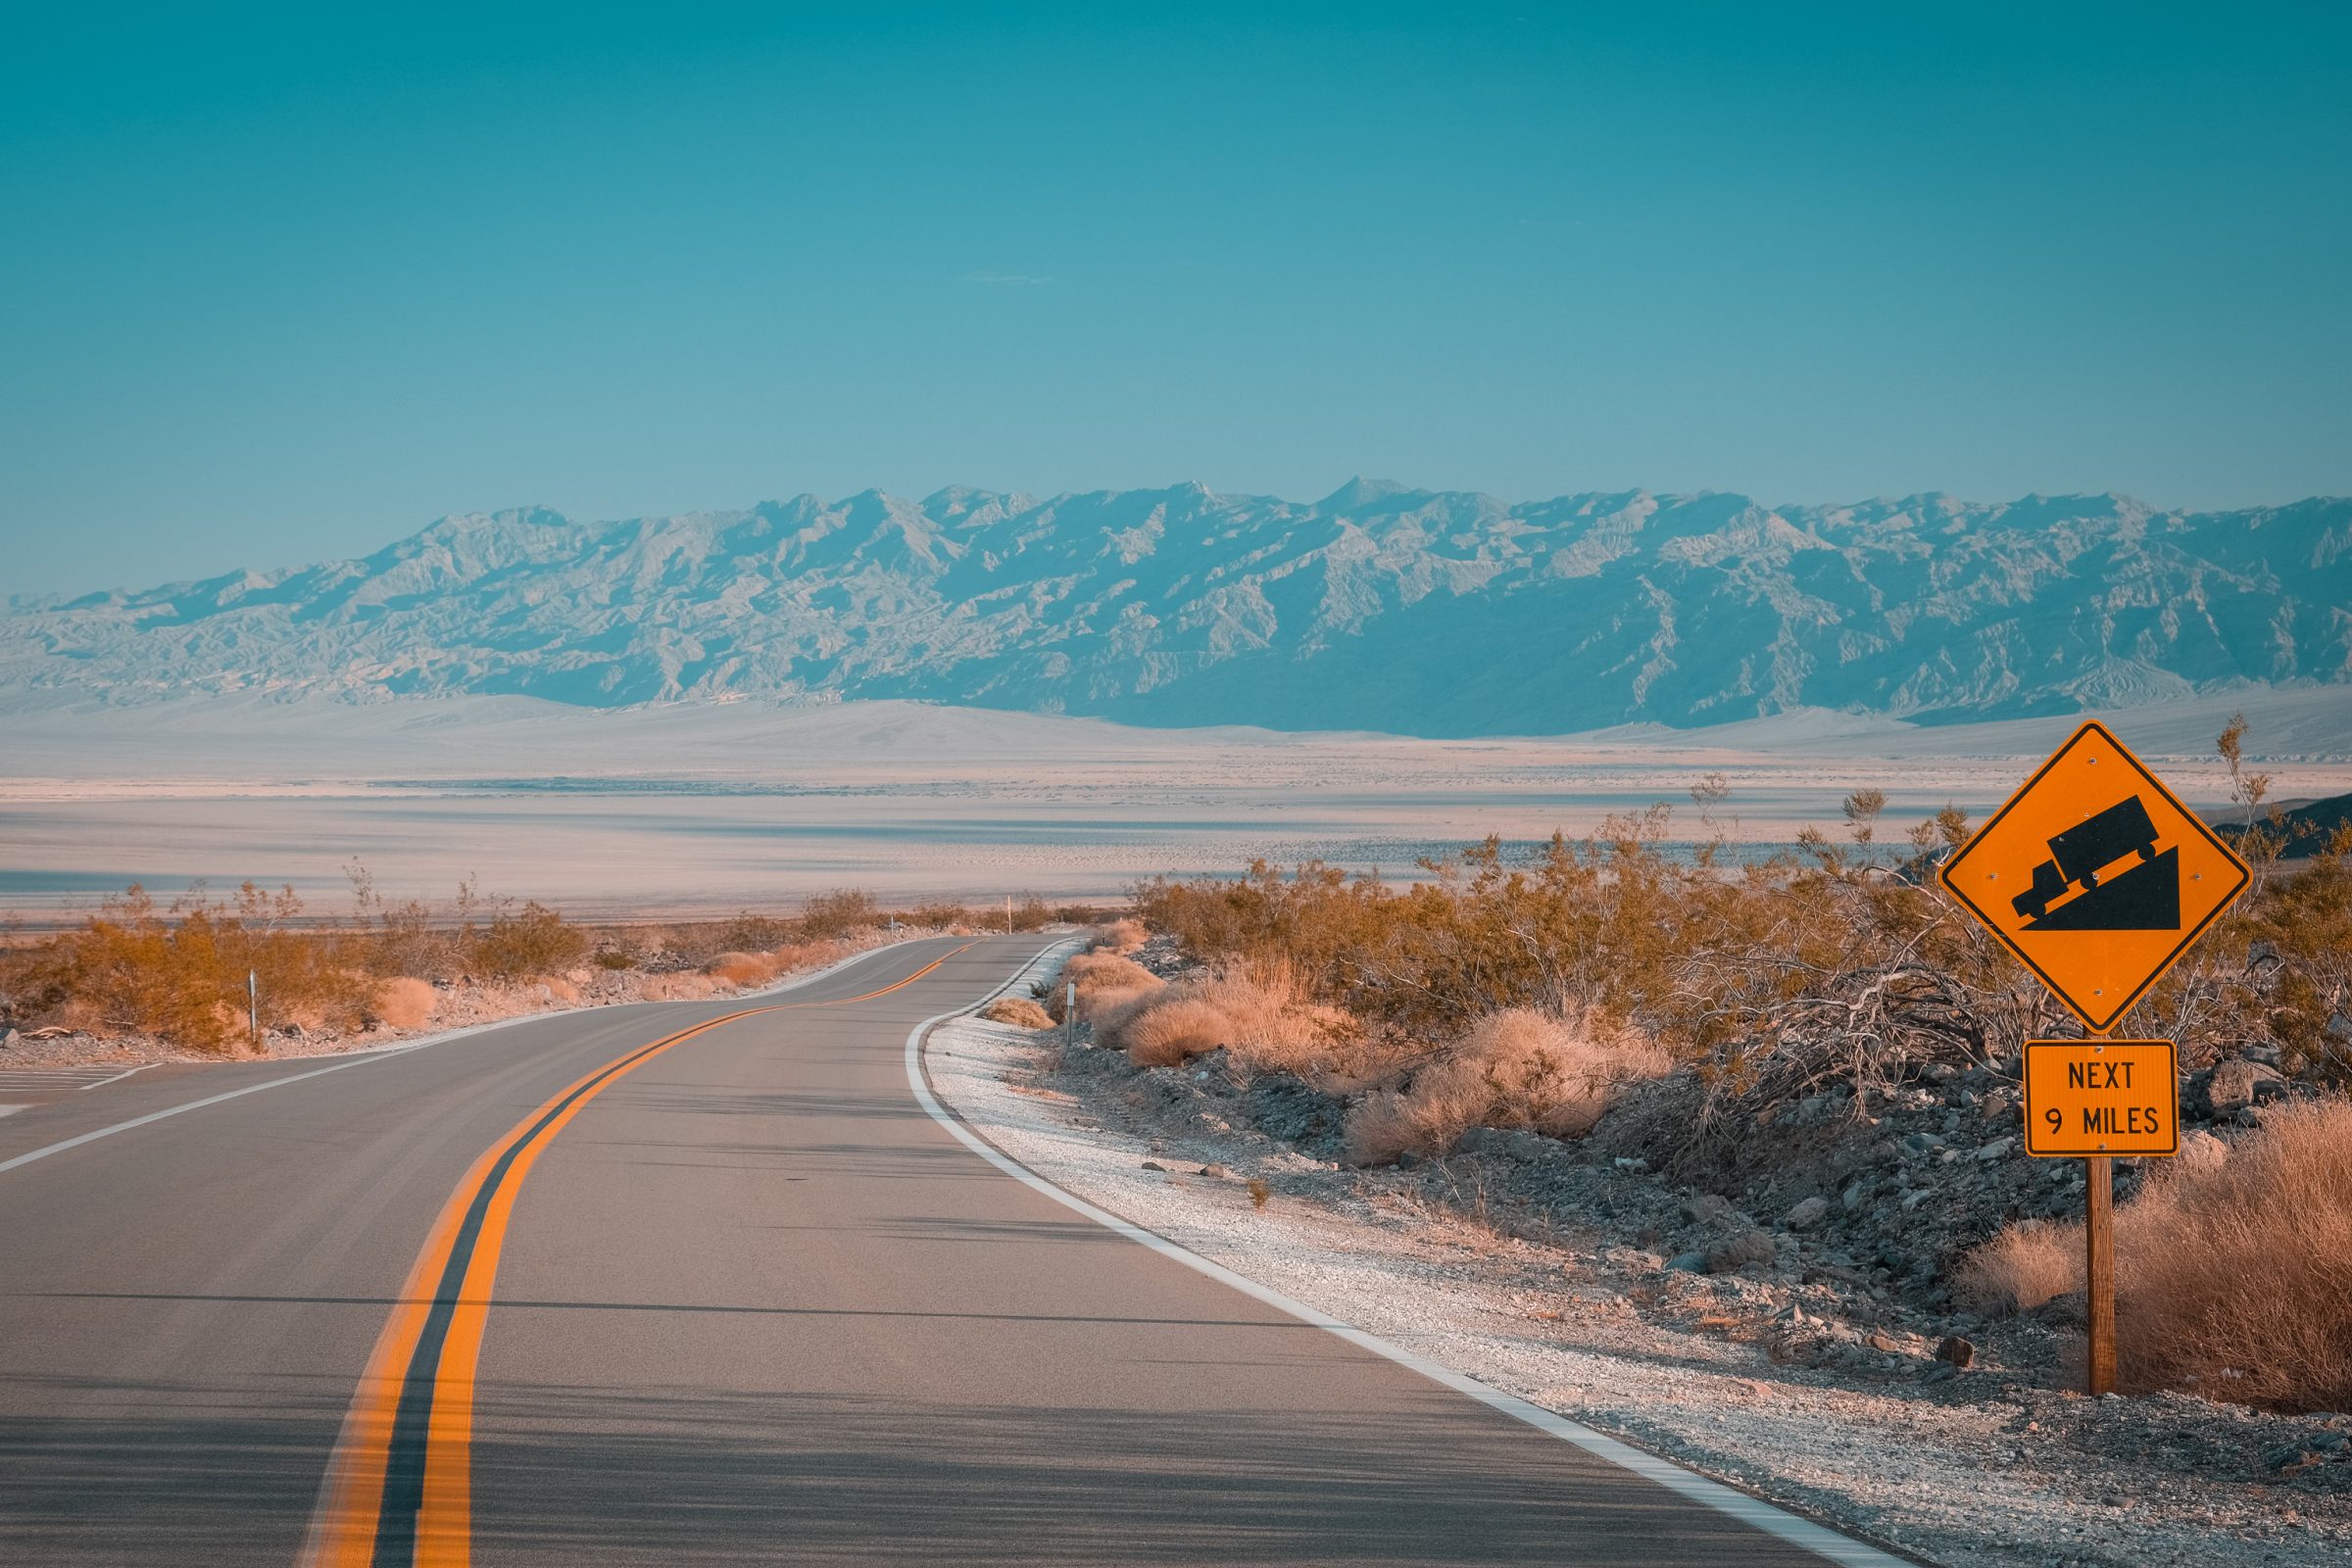 Nella Death Valley, è probabile che il tuo motore si surriscaldi. Tieni d'occhio la temperatura del tuo motore.